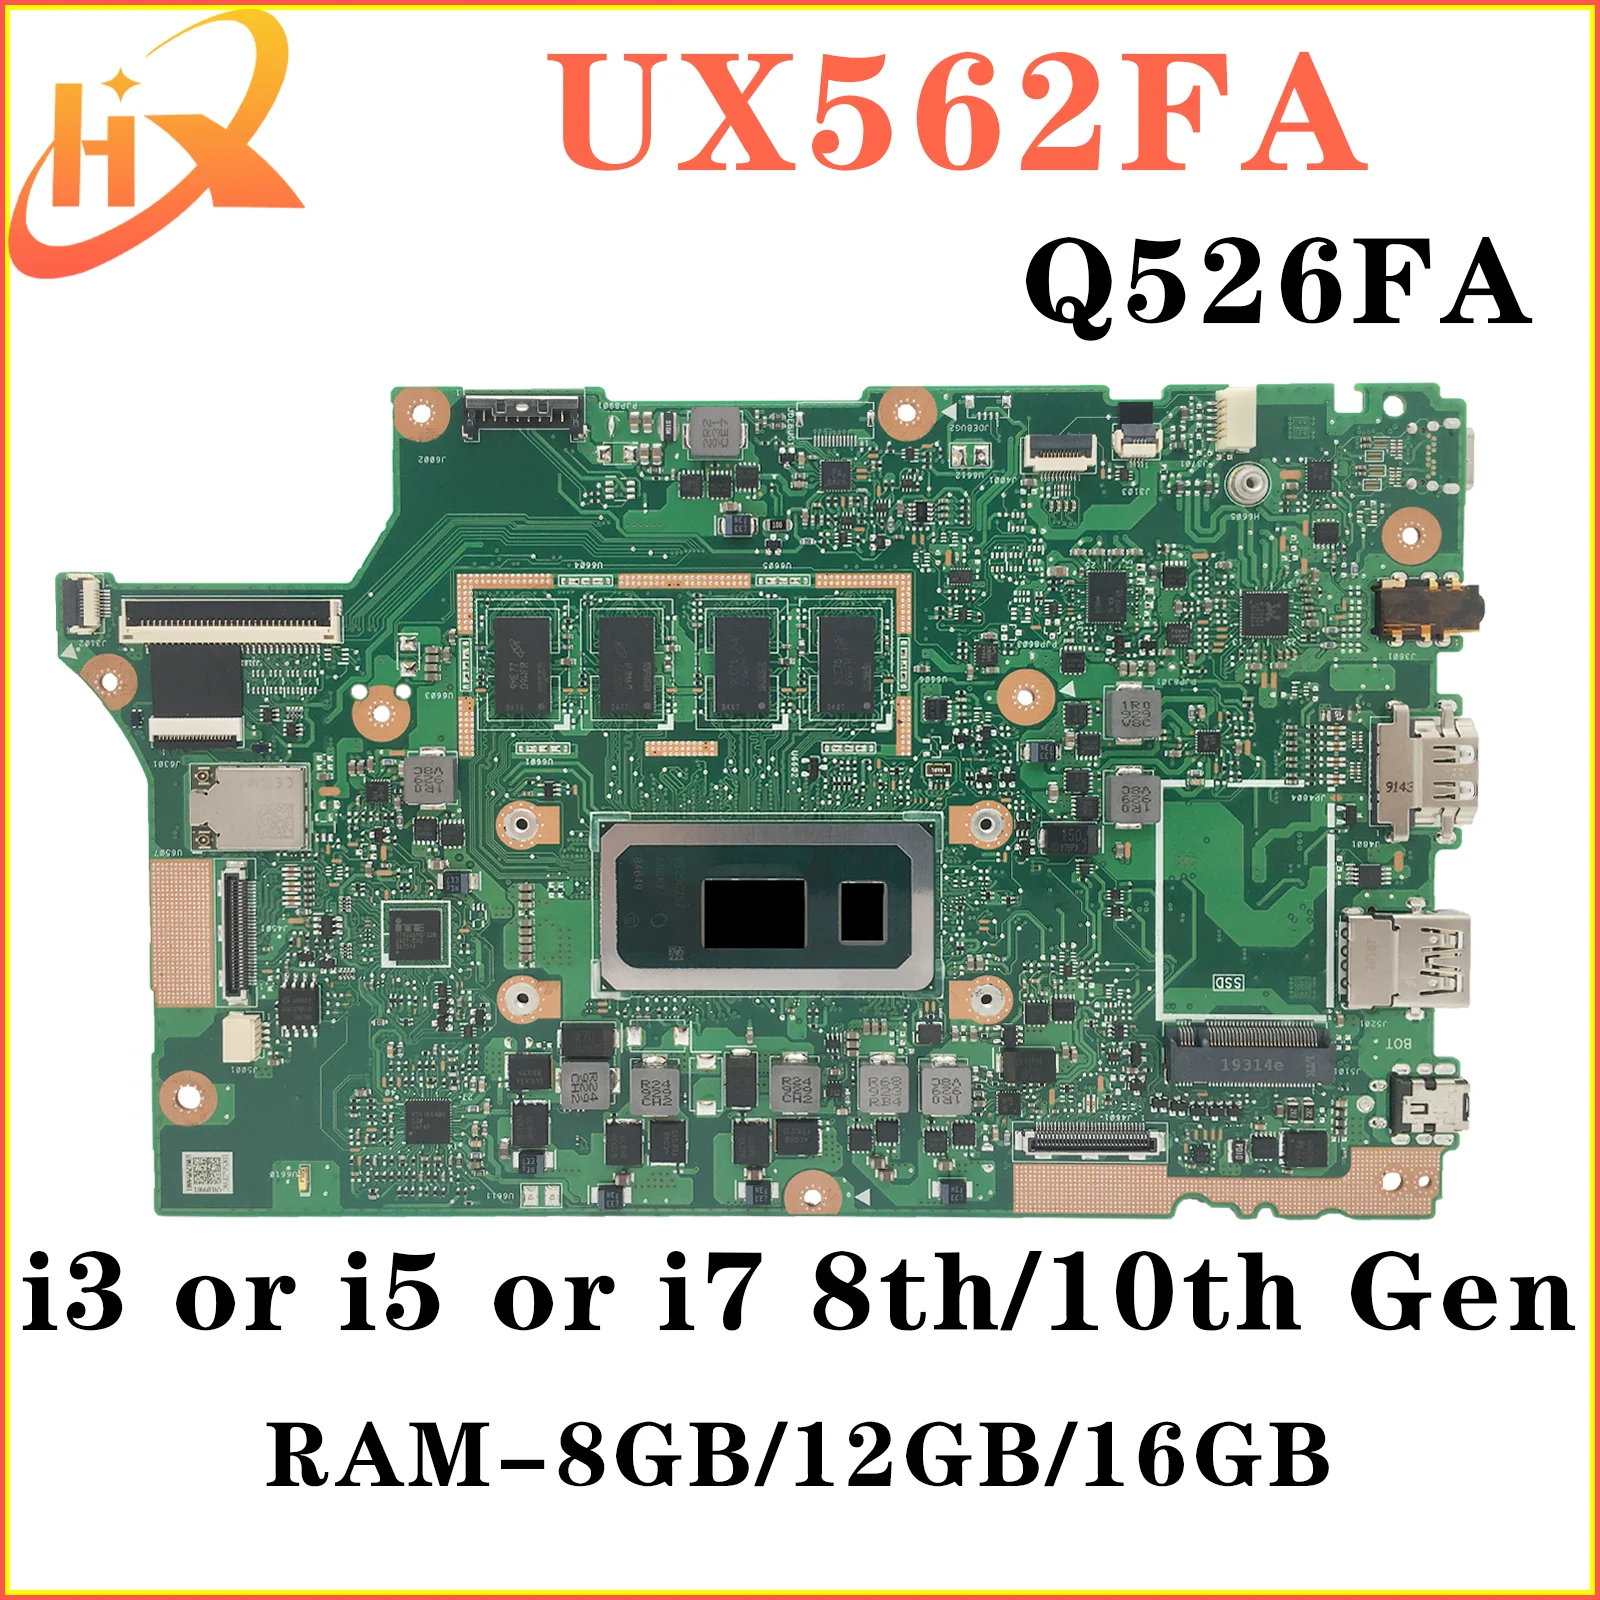 UX562FAC Материнская плата ASUS UX562FA UX562F Q526FA Q526FAC Q526F материнская плата для ноутбука i5 i7 8/10-го поколения RAM-8GB/12GB/16GB материнская плата для ноутбука для rog gl753vd gl753ve fx753v zx753v gl753v gl753 материнская плата для ноутбука i5 i7 7 го поколения gtx1050 gtx1050ti